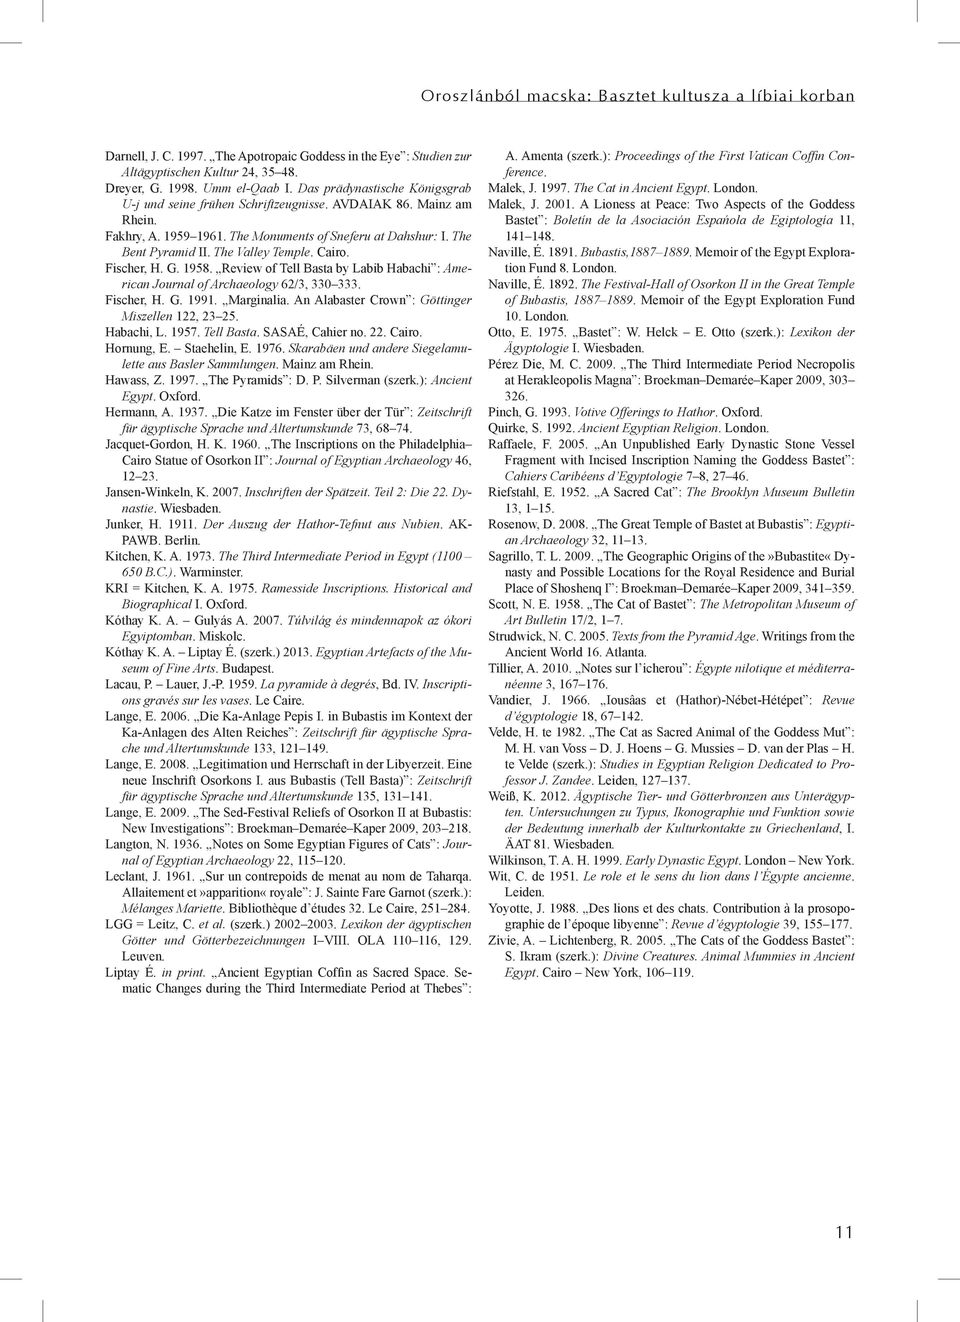 Cairo. Fischer, H. G. 1958. Review of Tell Basta by Labib Habachi : American Journal of Archaeology 62/3, 330 333. Fischer, H. G. 1991. Marginalia. An Alabaster Crown : Göttinger Miszellen 122, 23 25.